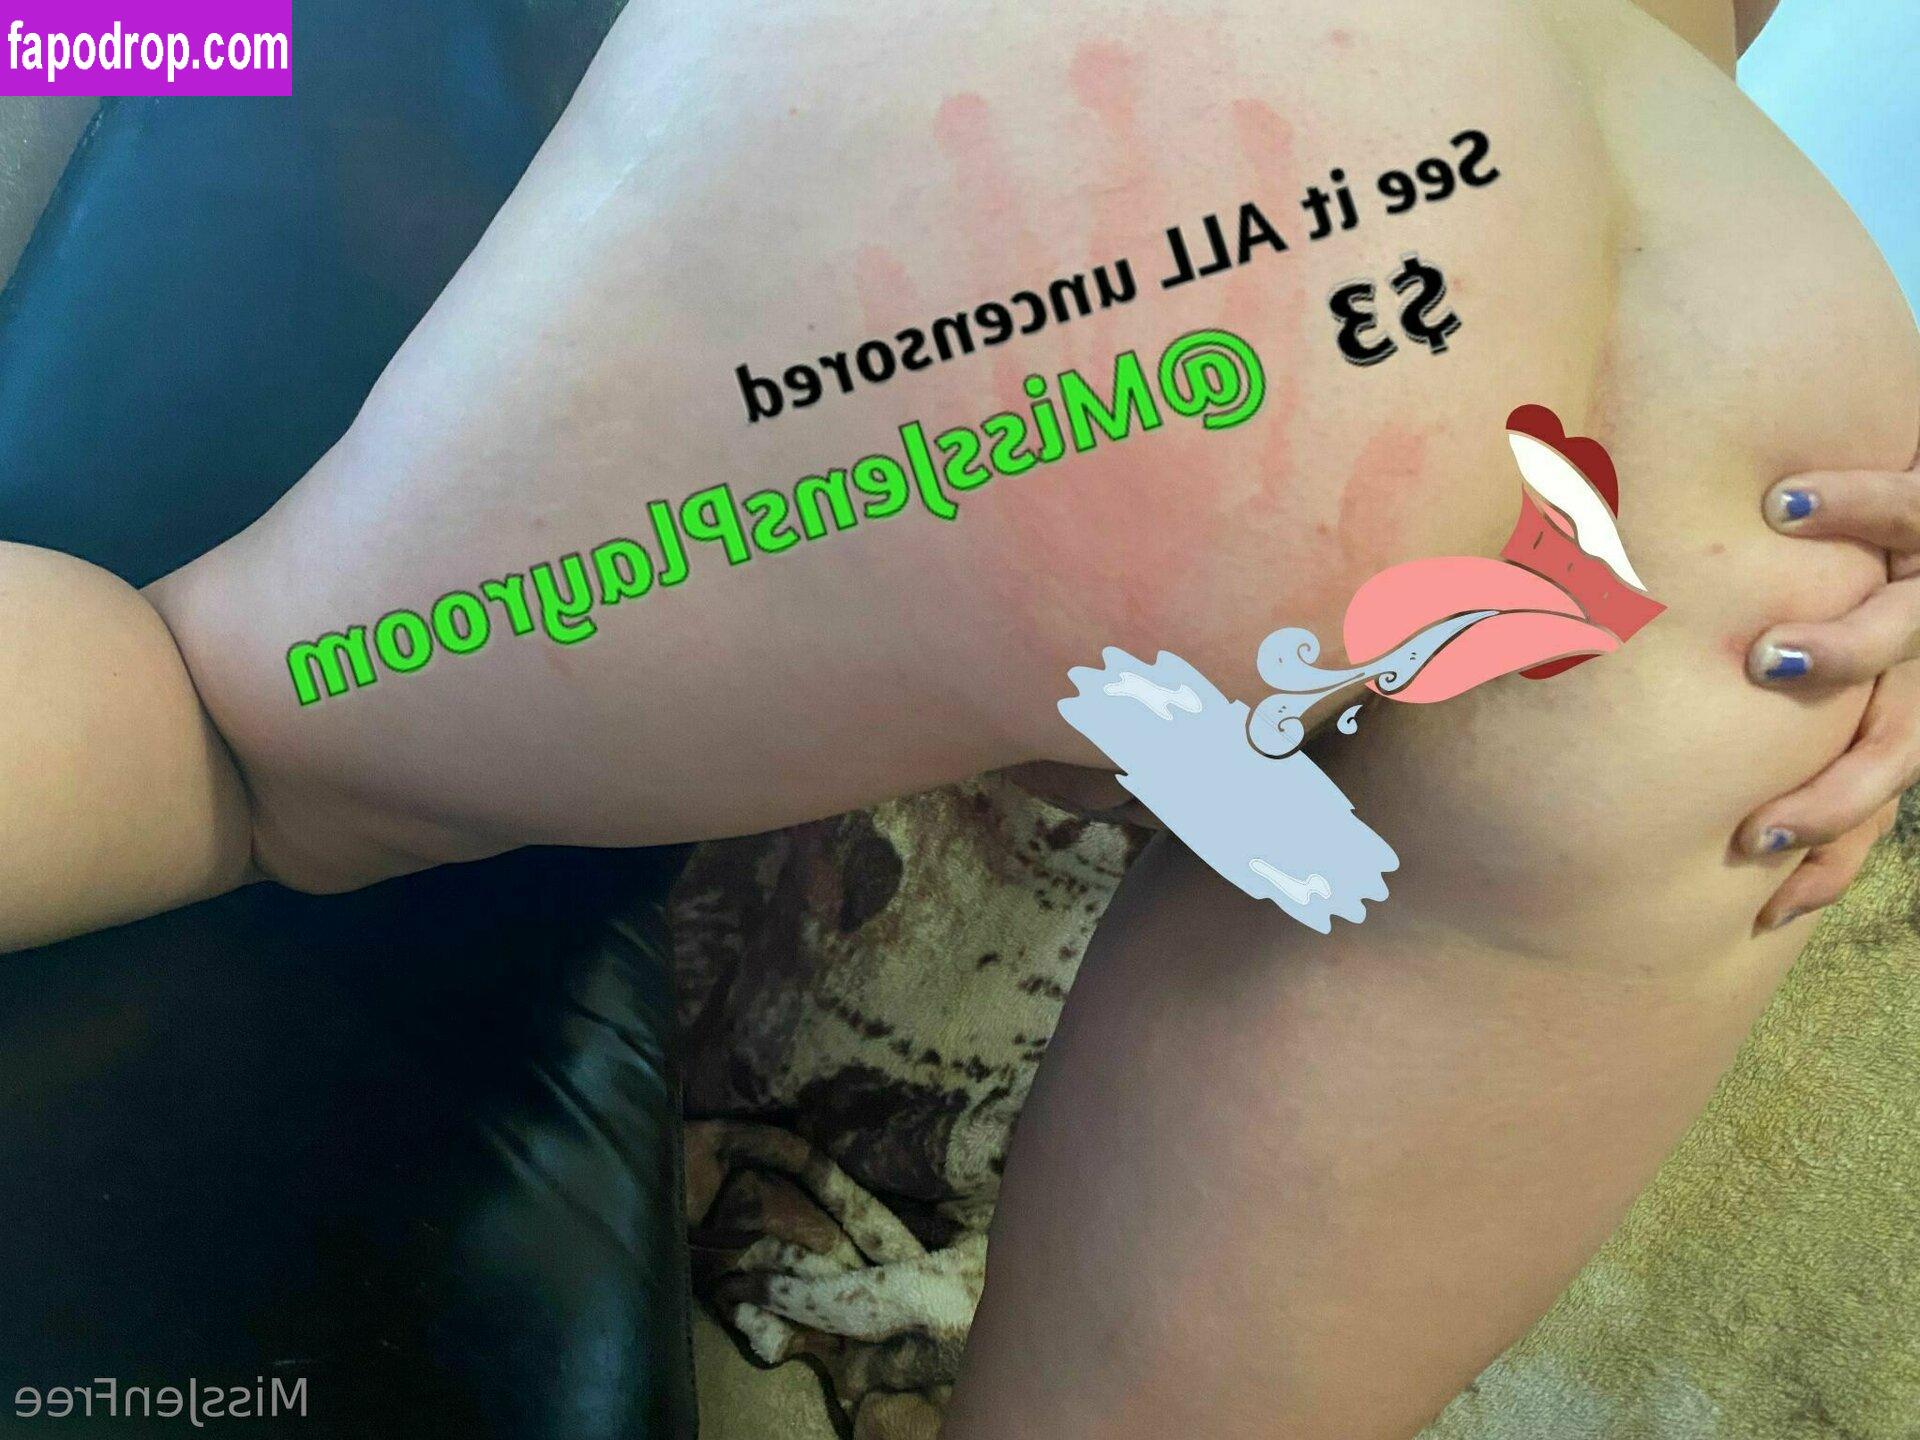 missjenfree / missfree leak of nude photo #0067 from OnlyFans or Patreon